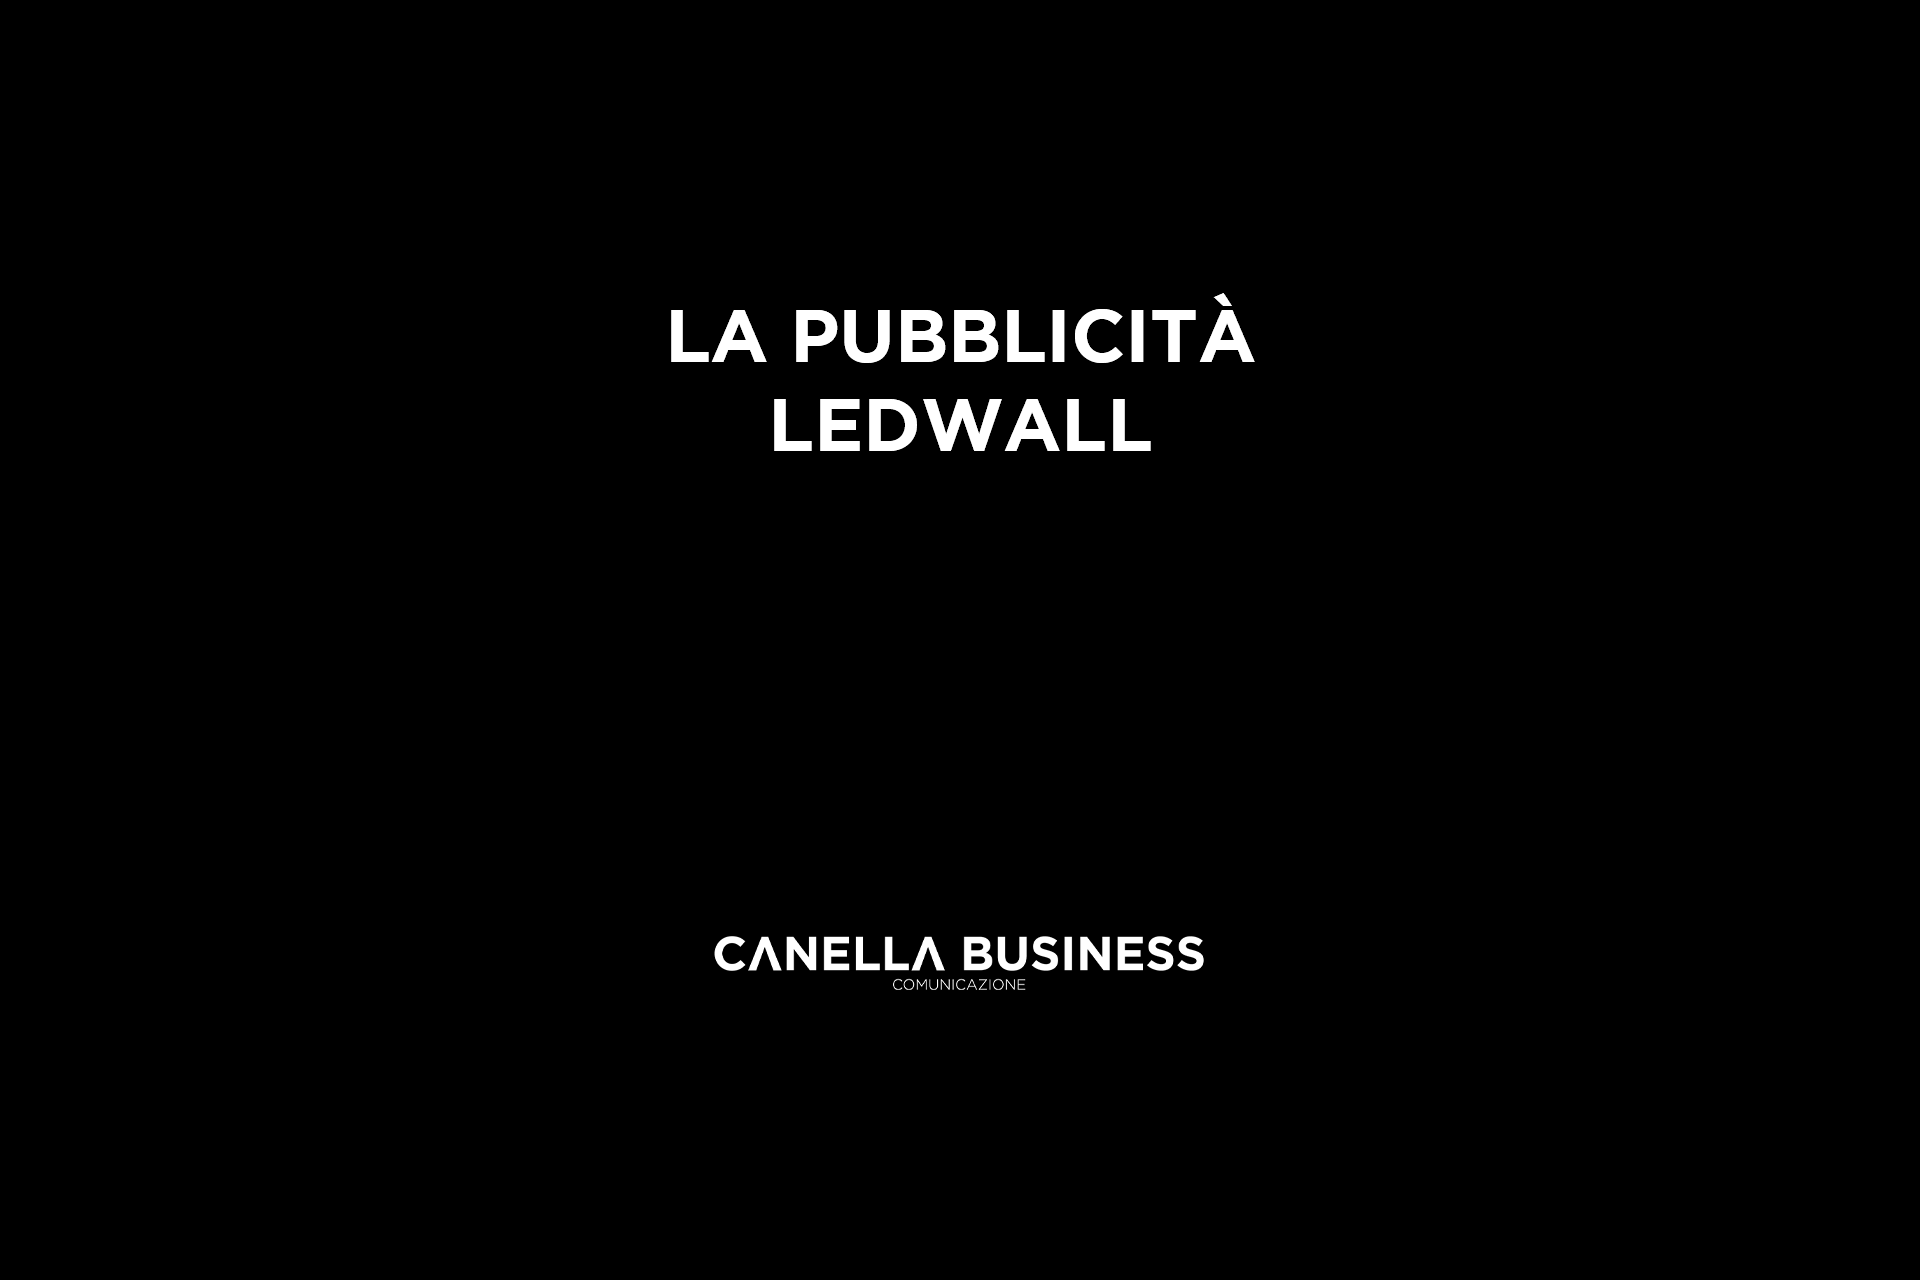 La Pubblicità Ledwall